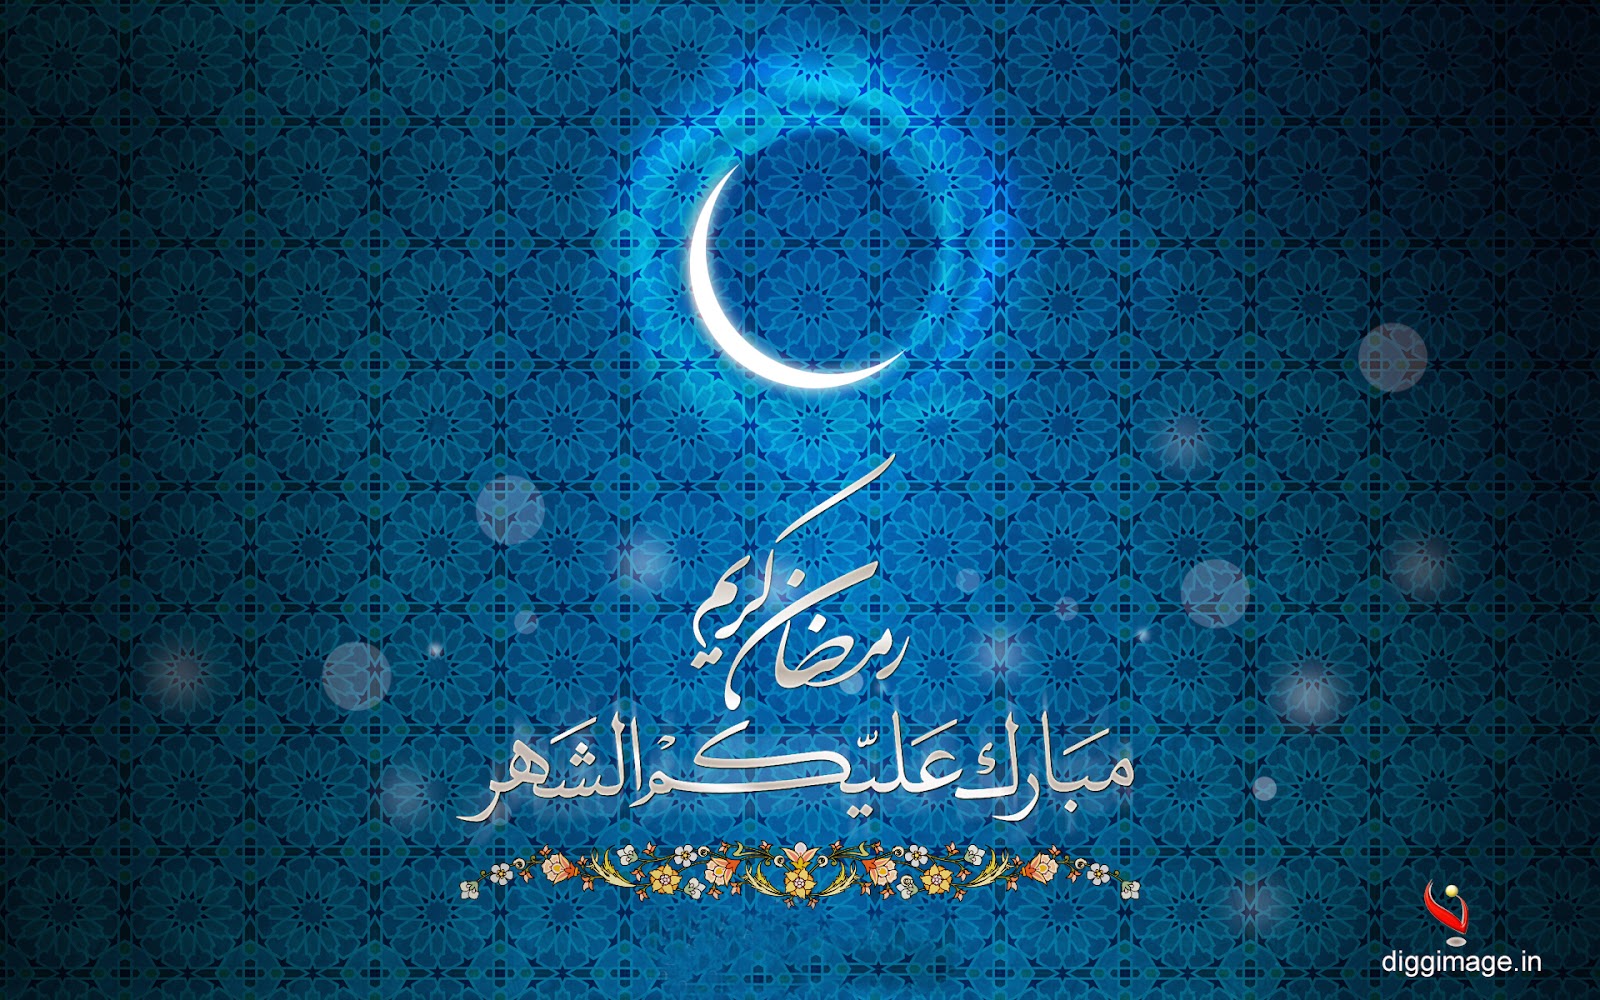  Ramadan Images, scraps & greetings, Ramzan Mubarak Wishes & E-cards, Ramadan Kareem 